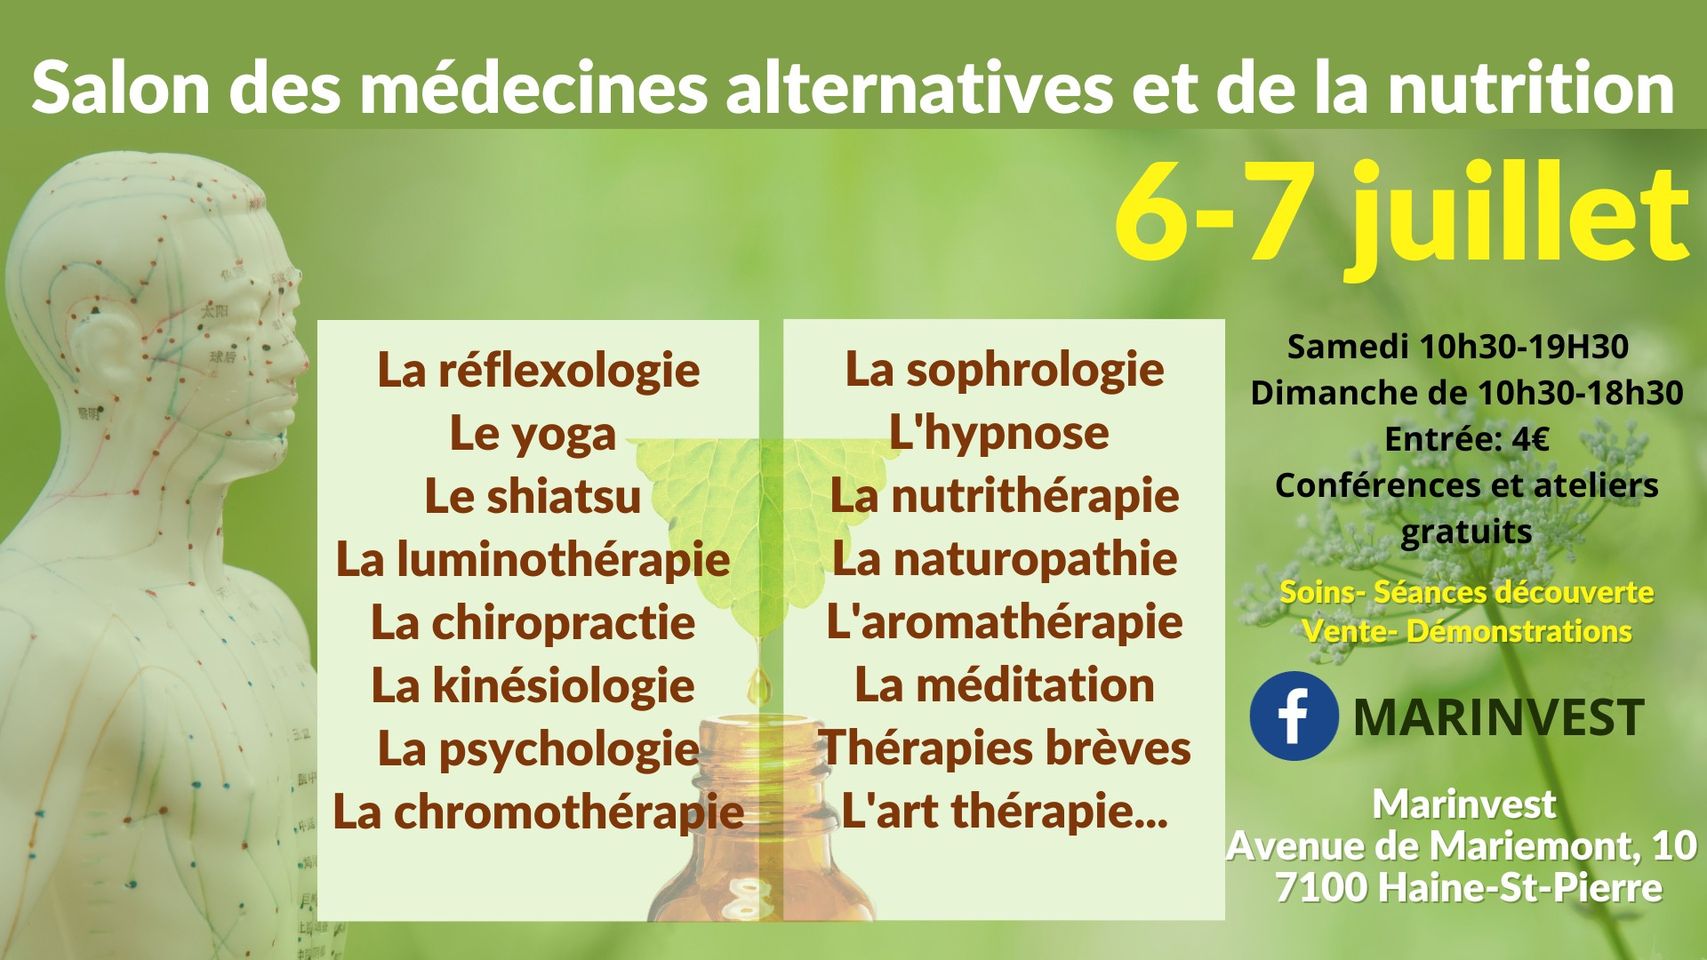 Ce événement rassemblera des experts en médecines alternatives et en nutrition, les 6 et 7 juillet, à Haine-St-Pierre.<br />
L'accent sera mis sur 𝐥𝐞𝐬 𝐭𝐡𝐞́𝐫𝐚𝐩𝐢𝐞𝐬 𝐚𝐥𝐭𝐞𝐫𝐧𝐚𝐭𝐢𝐯𝐞𝐬 telles que l'aromathérapie, l'art thérapie, la naturopathie, la médecine traditionnelle chinoise, la phytothérapie, la kinésiologie, le shiatsu, les massages, la réflexologie, la relaxation, la sophrologie, l'hypnose, l'EFT, les thérapies énergétiques, ...<br />
𝐃𝐞𝐬 𝐬𝐩𝐞́𝐜𝐢𝐚𝐥𝐢𝐬𝐭𝐞𝐬 𝐞𝐧 𝐧𝐮𝐭𝐫𝐢𝐭𝐢𝐨𝐧 vous conseilleront au mieux: alimentation saine, compléments alimentaires, dégustations de produits naturels, pleine conscience, ...<br />
✱Des conférences et des ateliers seront programmés tout le week-end.<br />
Entrée: 4€<br />
Marinvest, avenue de Mariemont, 10 à7100 Haine-St-Pierre.<br />
Infos: 0497 610 390 ou marinvestwiels@gmail.com